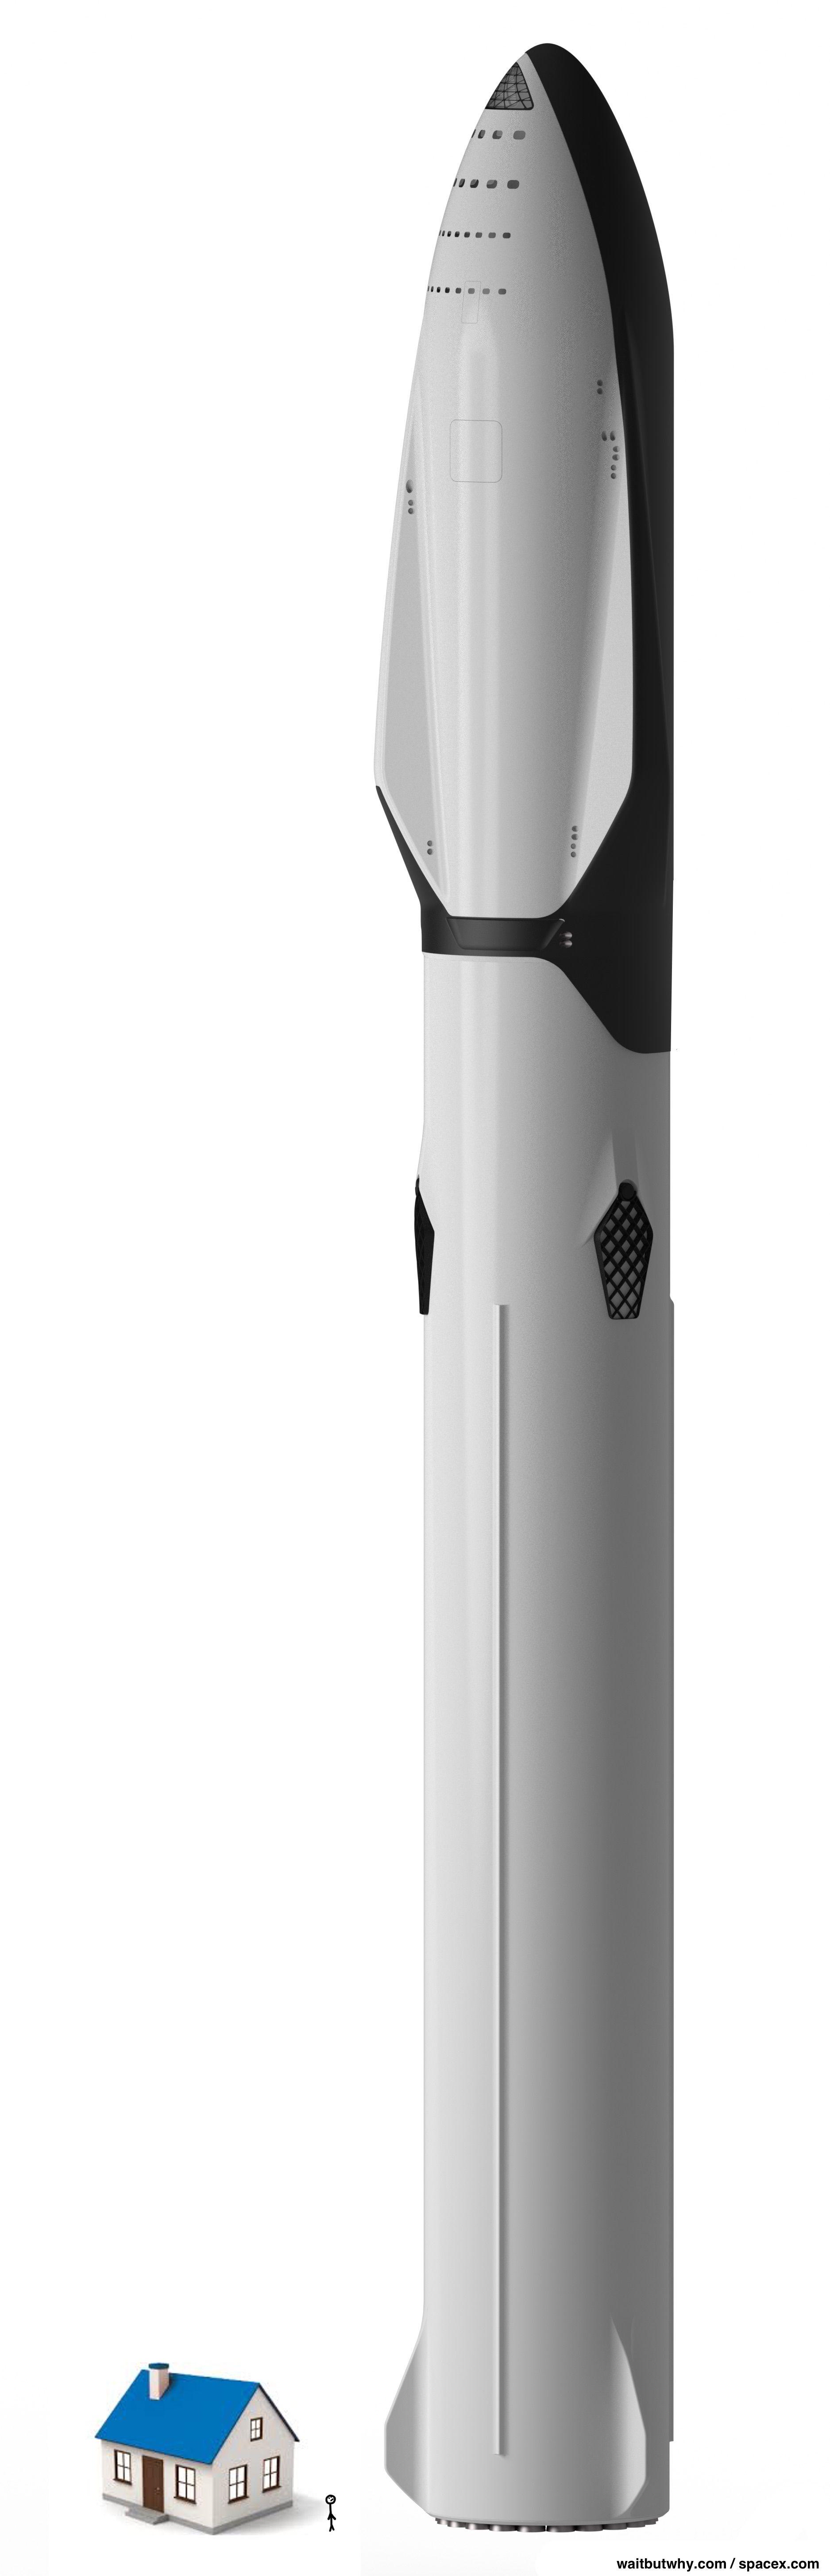 SpaceX Mars Rocket Logo - SpaceX's Big Fucking Rocket